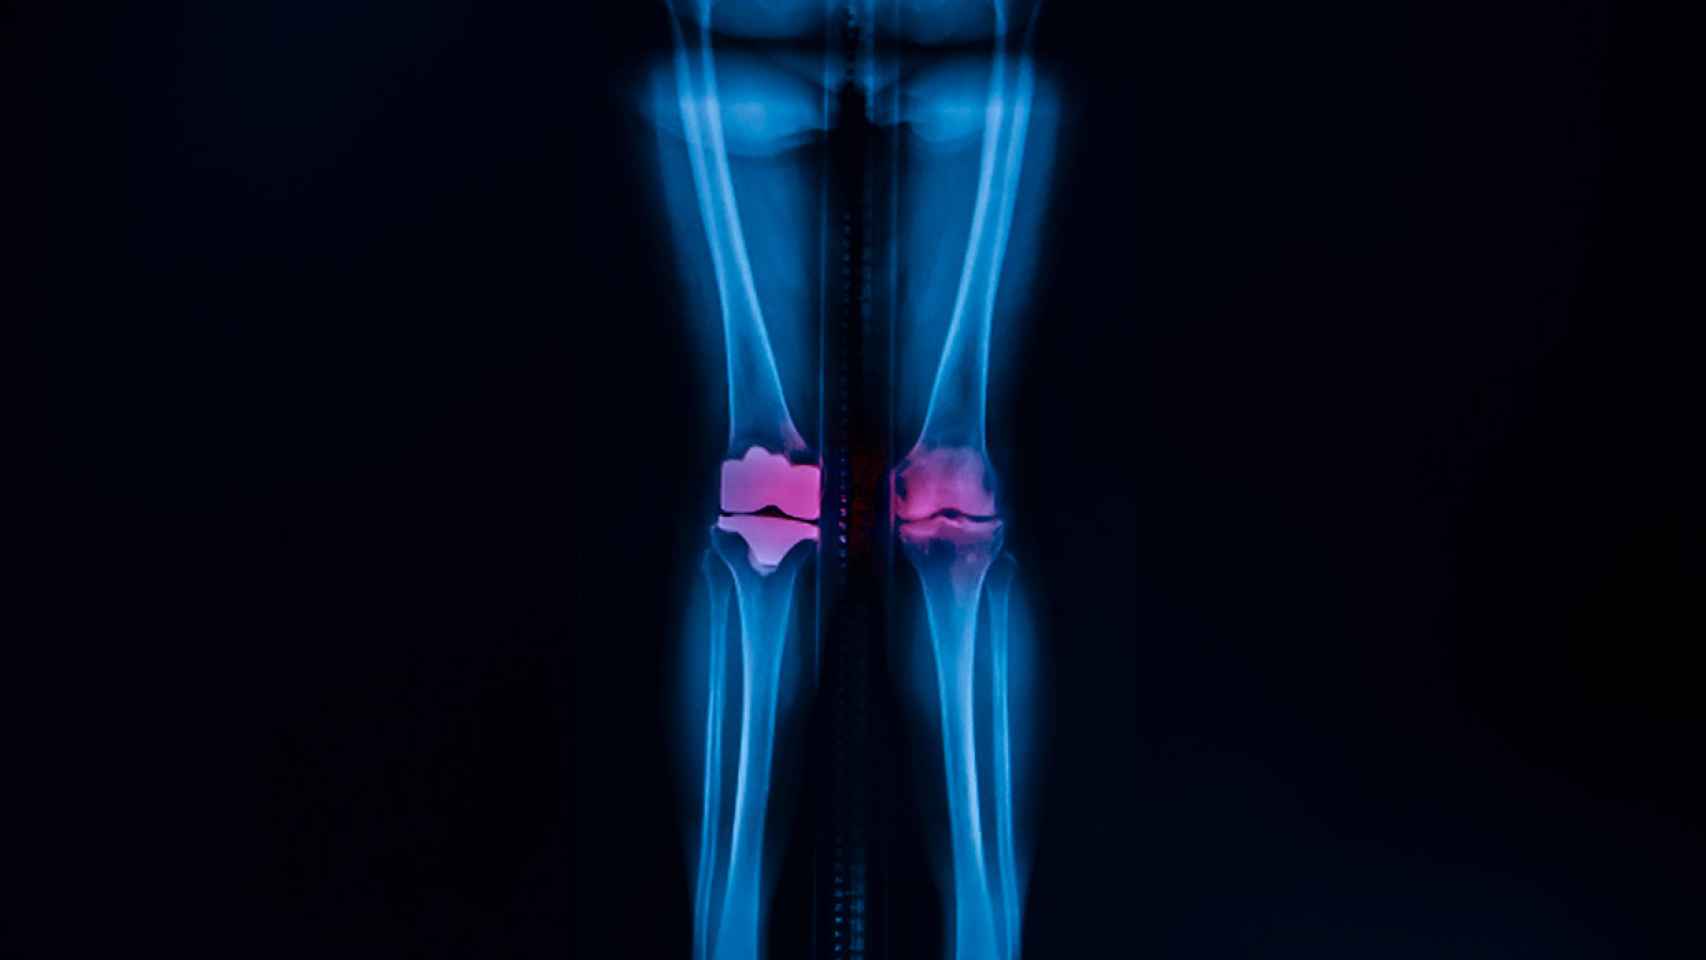 Este nuevo material mejorará las prótesis de rodilla y cadera.